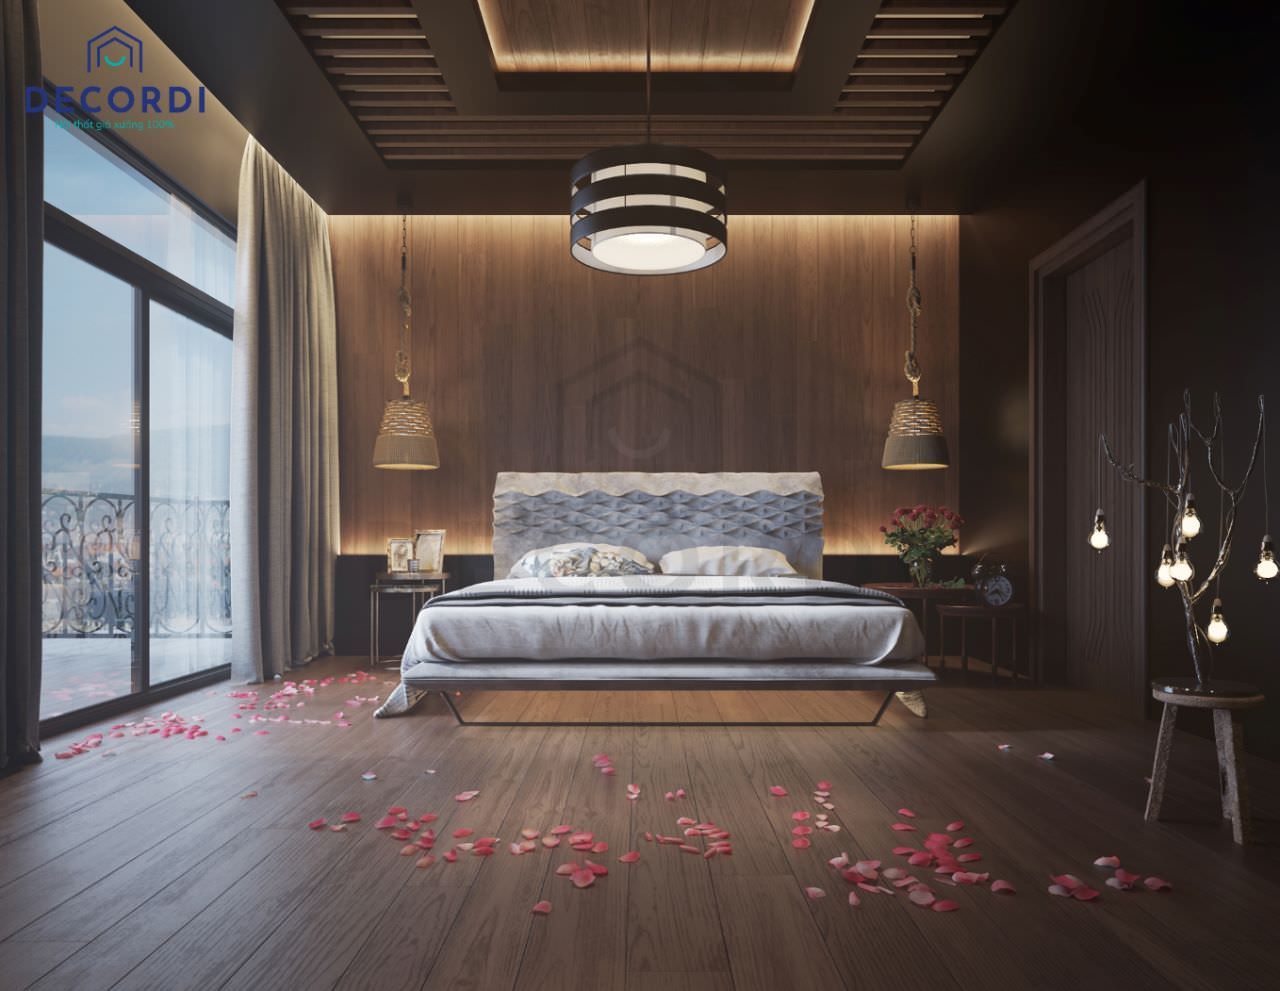 Phòng ngủ bằng gỗ trầm ấm,cao cấp kết hợp rèm cửa tự động tối ưu ánh sáng cho căn phòng